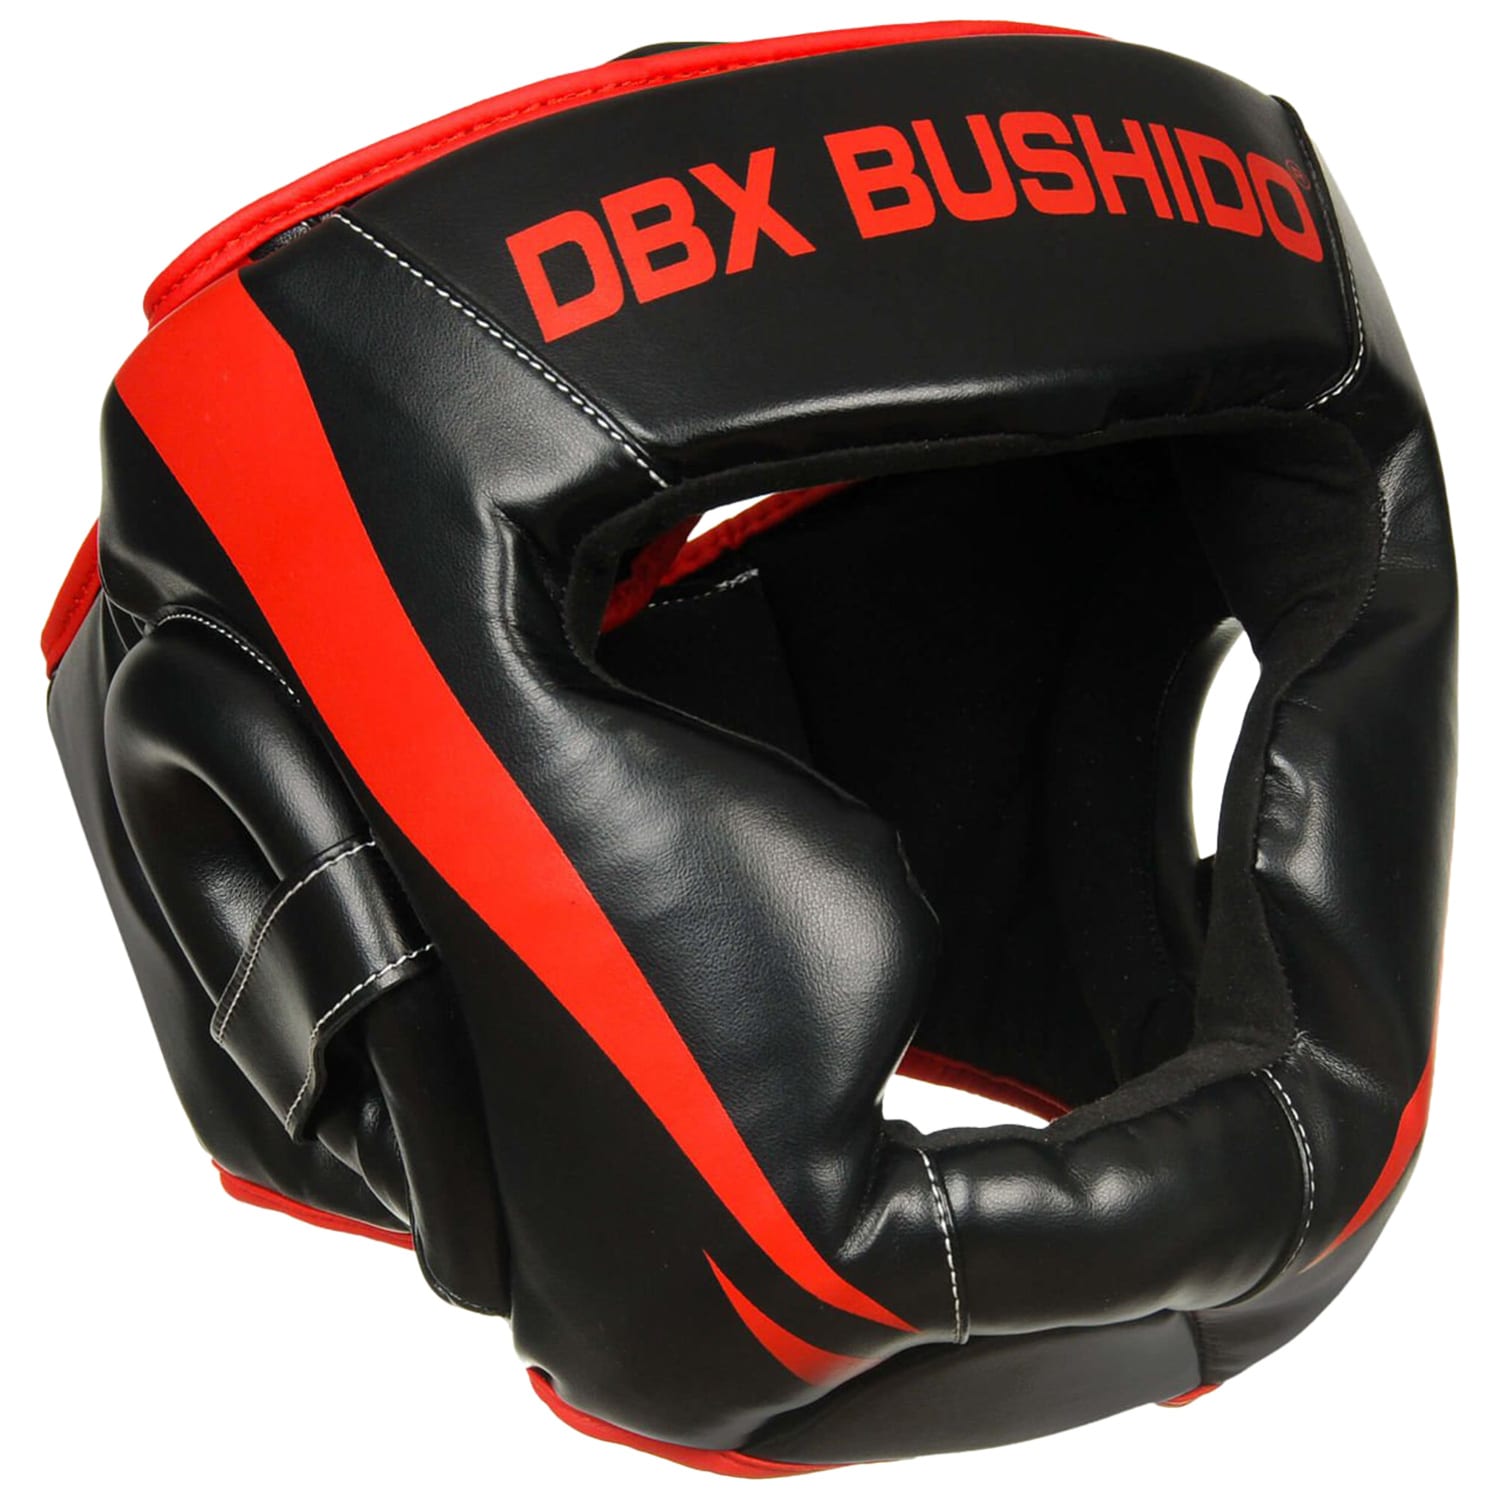 Kask bokserski DBX Bushido treningowy/sparingowy - Czarny/Czerwony 